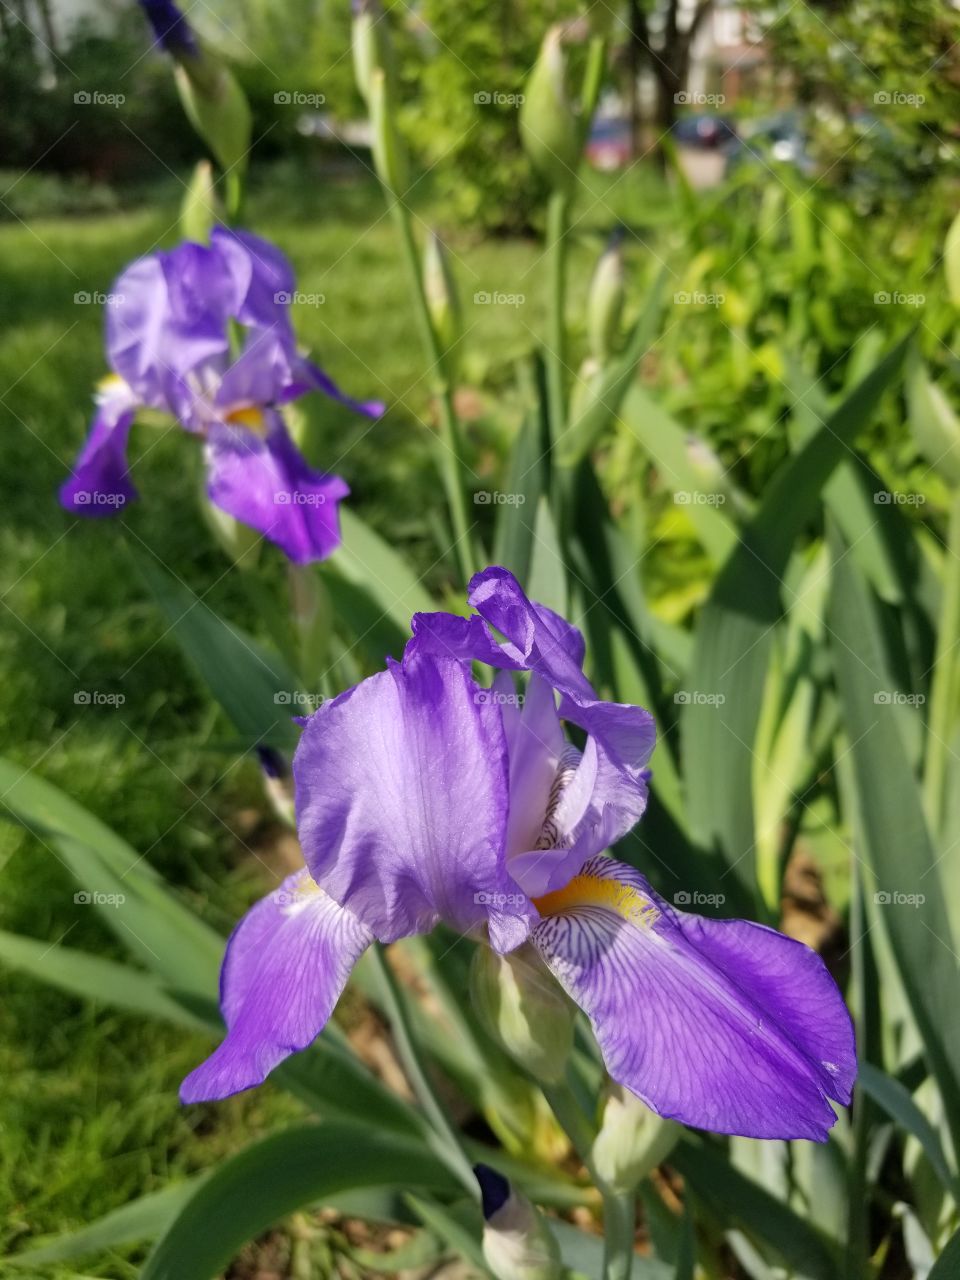 First Iris Blooms of Spring